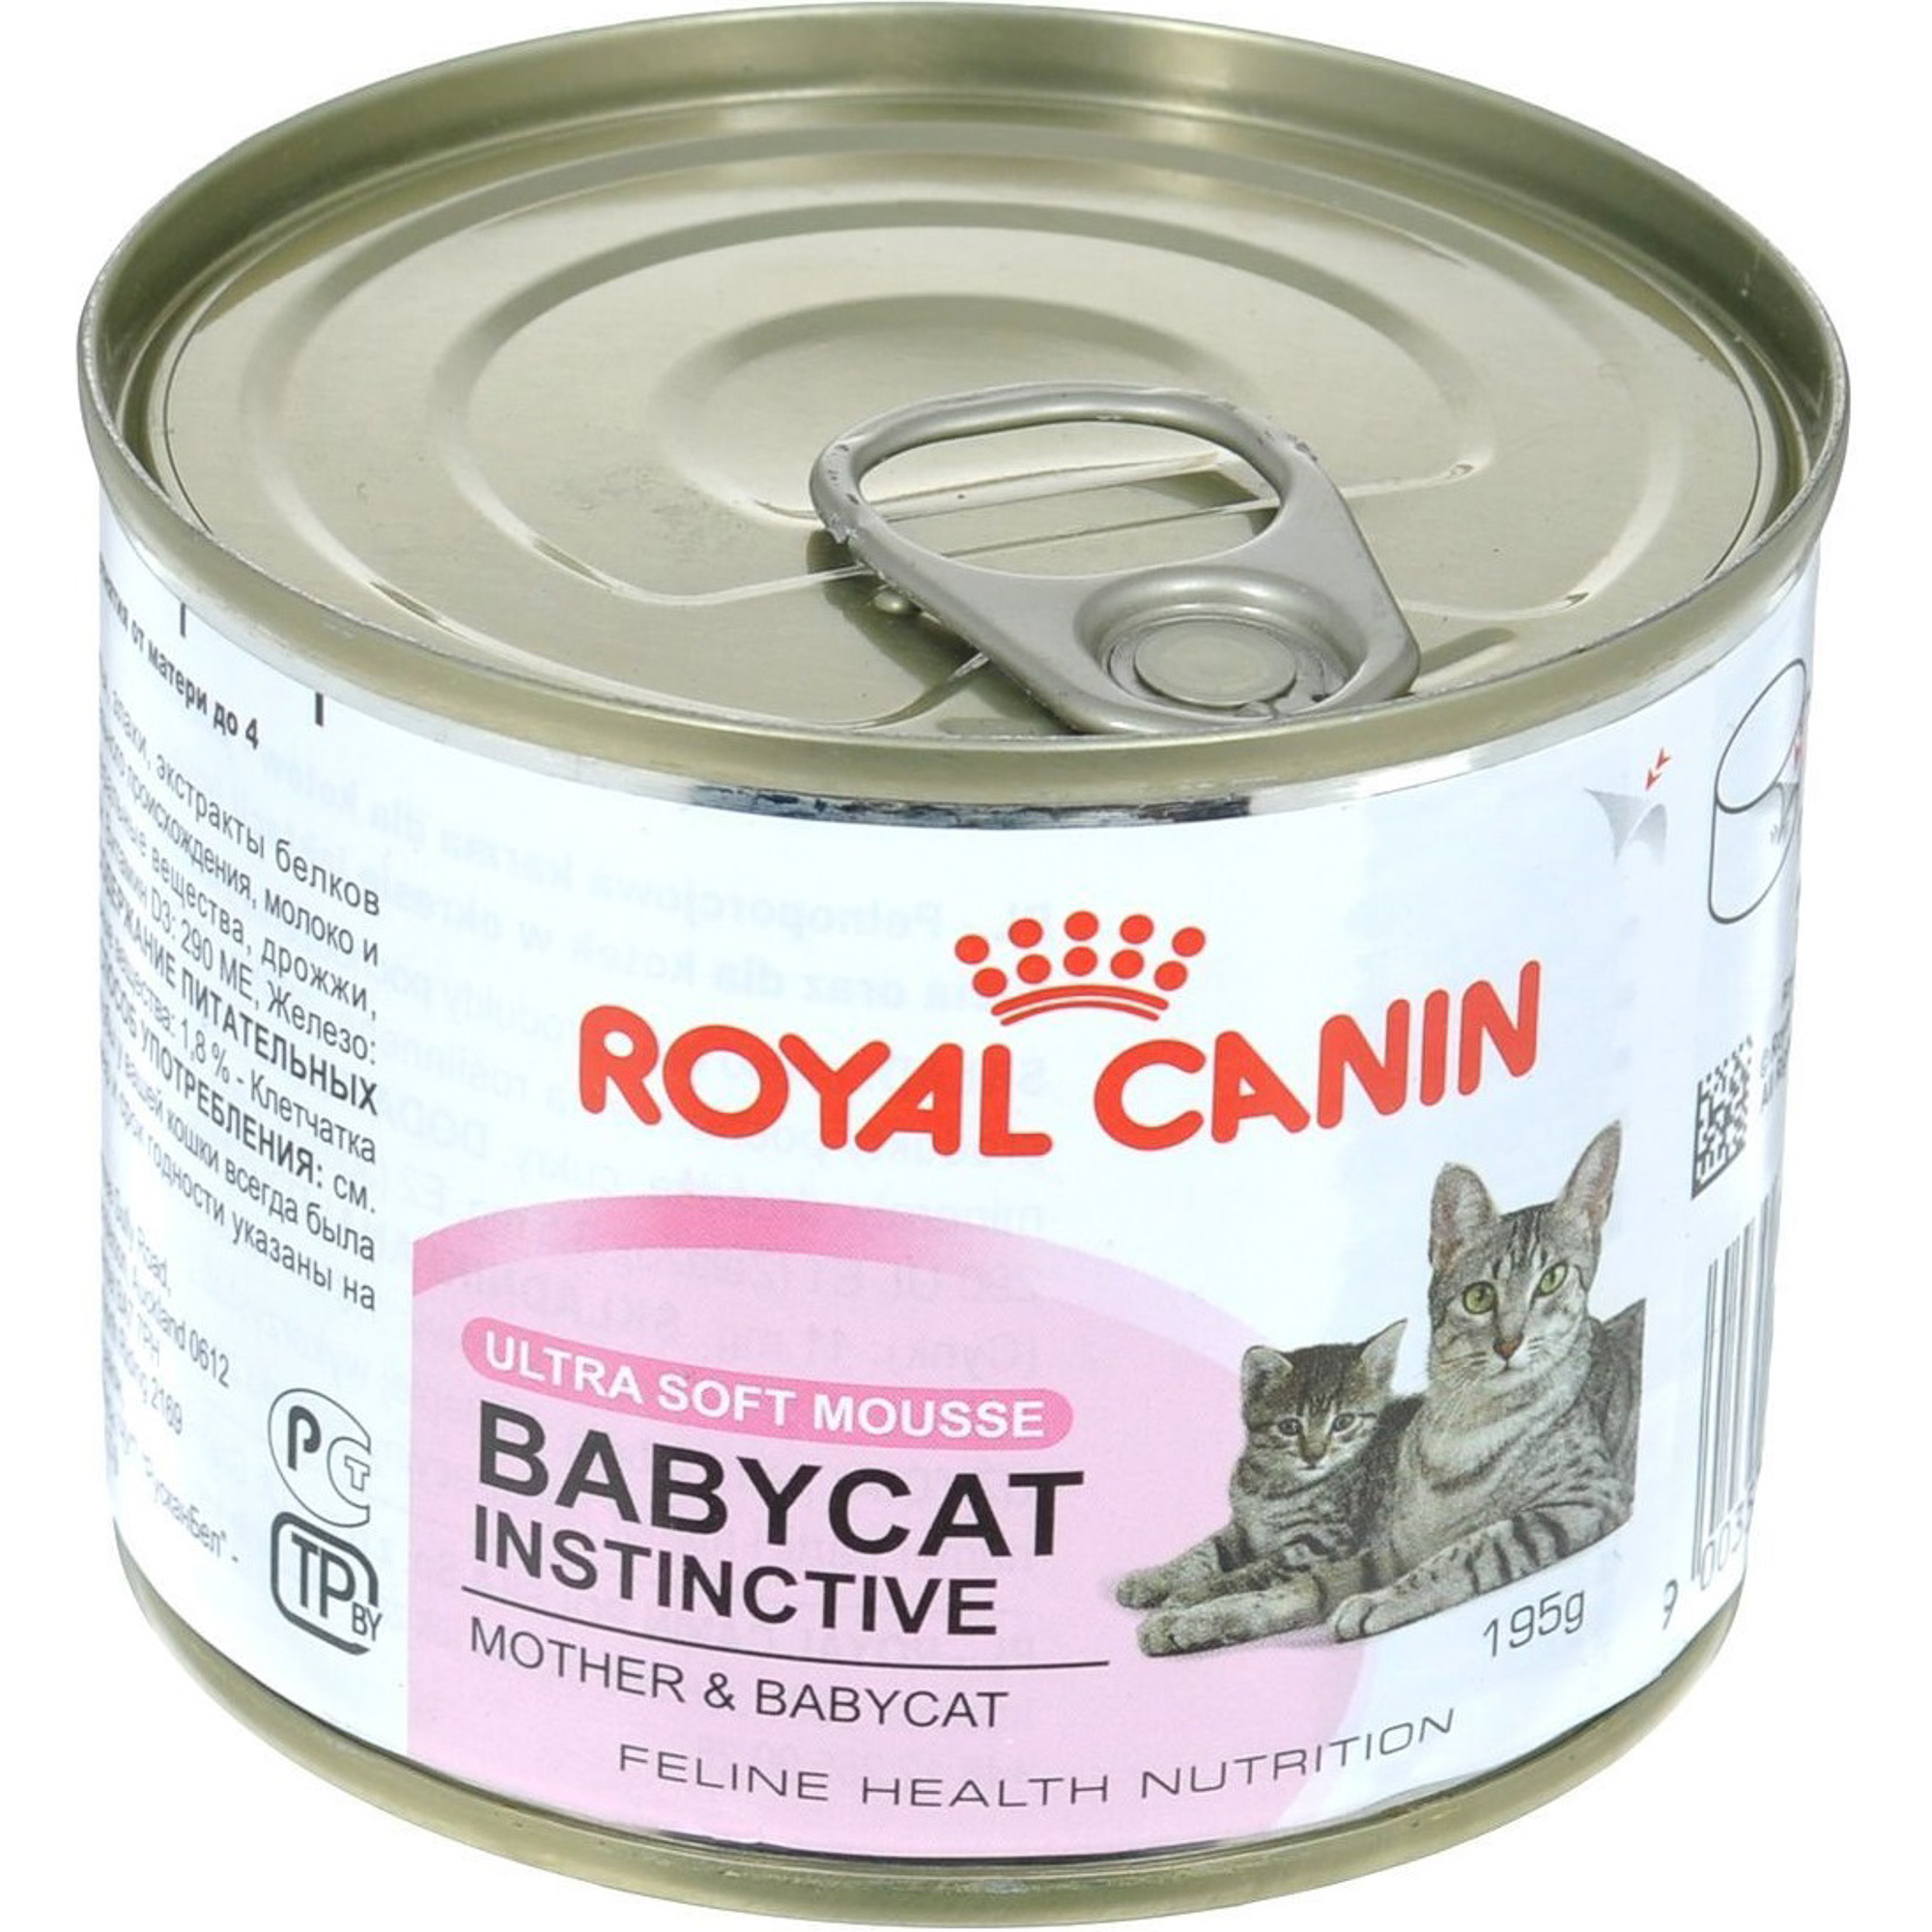 Влажный корм для кошек 12. Роял Канин для кошек mother Babycat консервы 195 г. Паштет для котят Babycat Royal Canin. Роял Канин консервы для котят до 4 месяцев. Royal Canin Babycat мусс.